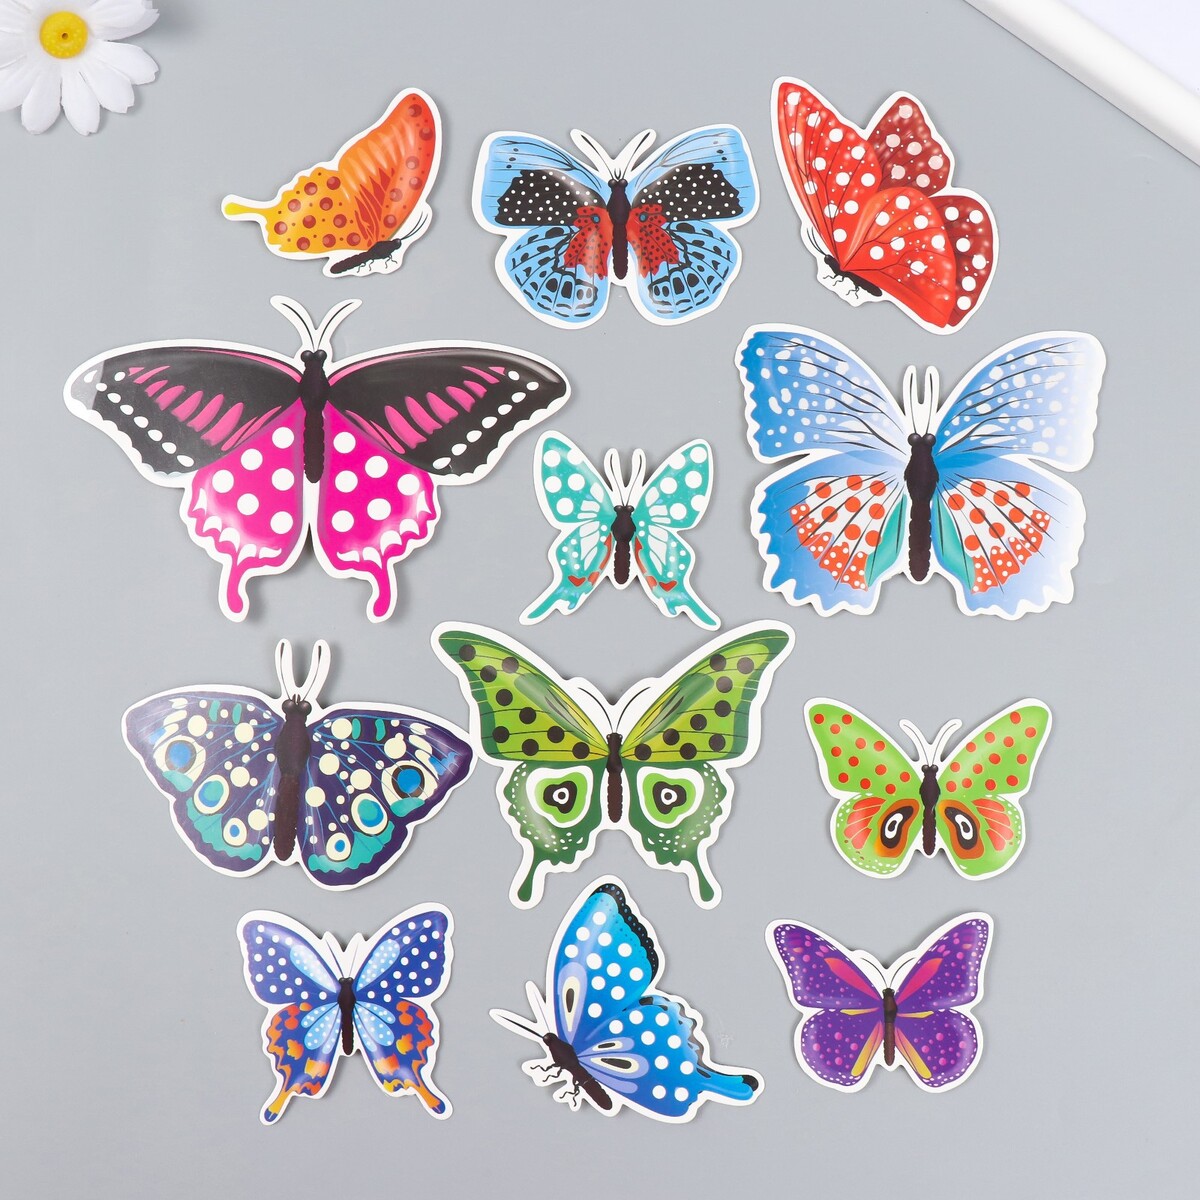 Купить бабочки с доставкой. Бабочка на картоне. Бабочка из картона. Бабочки из картона большие. Бабочки з картона для занятий в старшей группе.